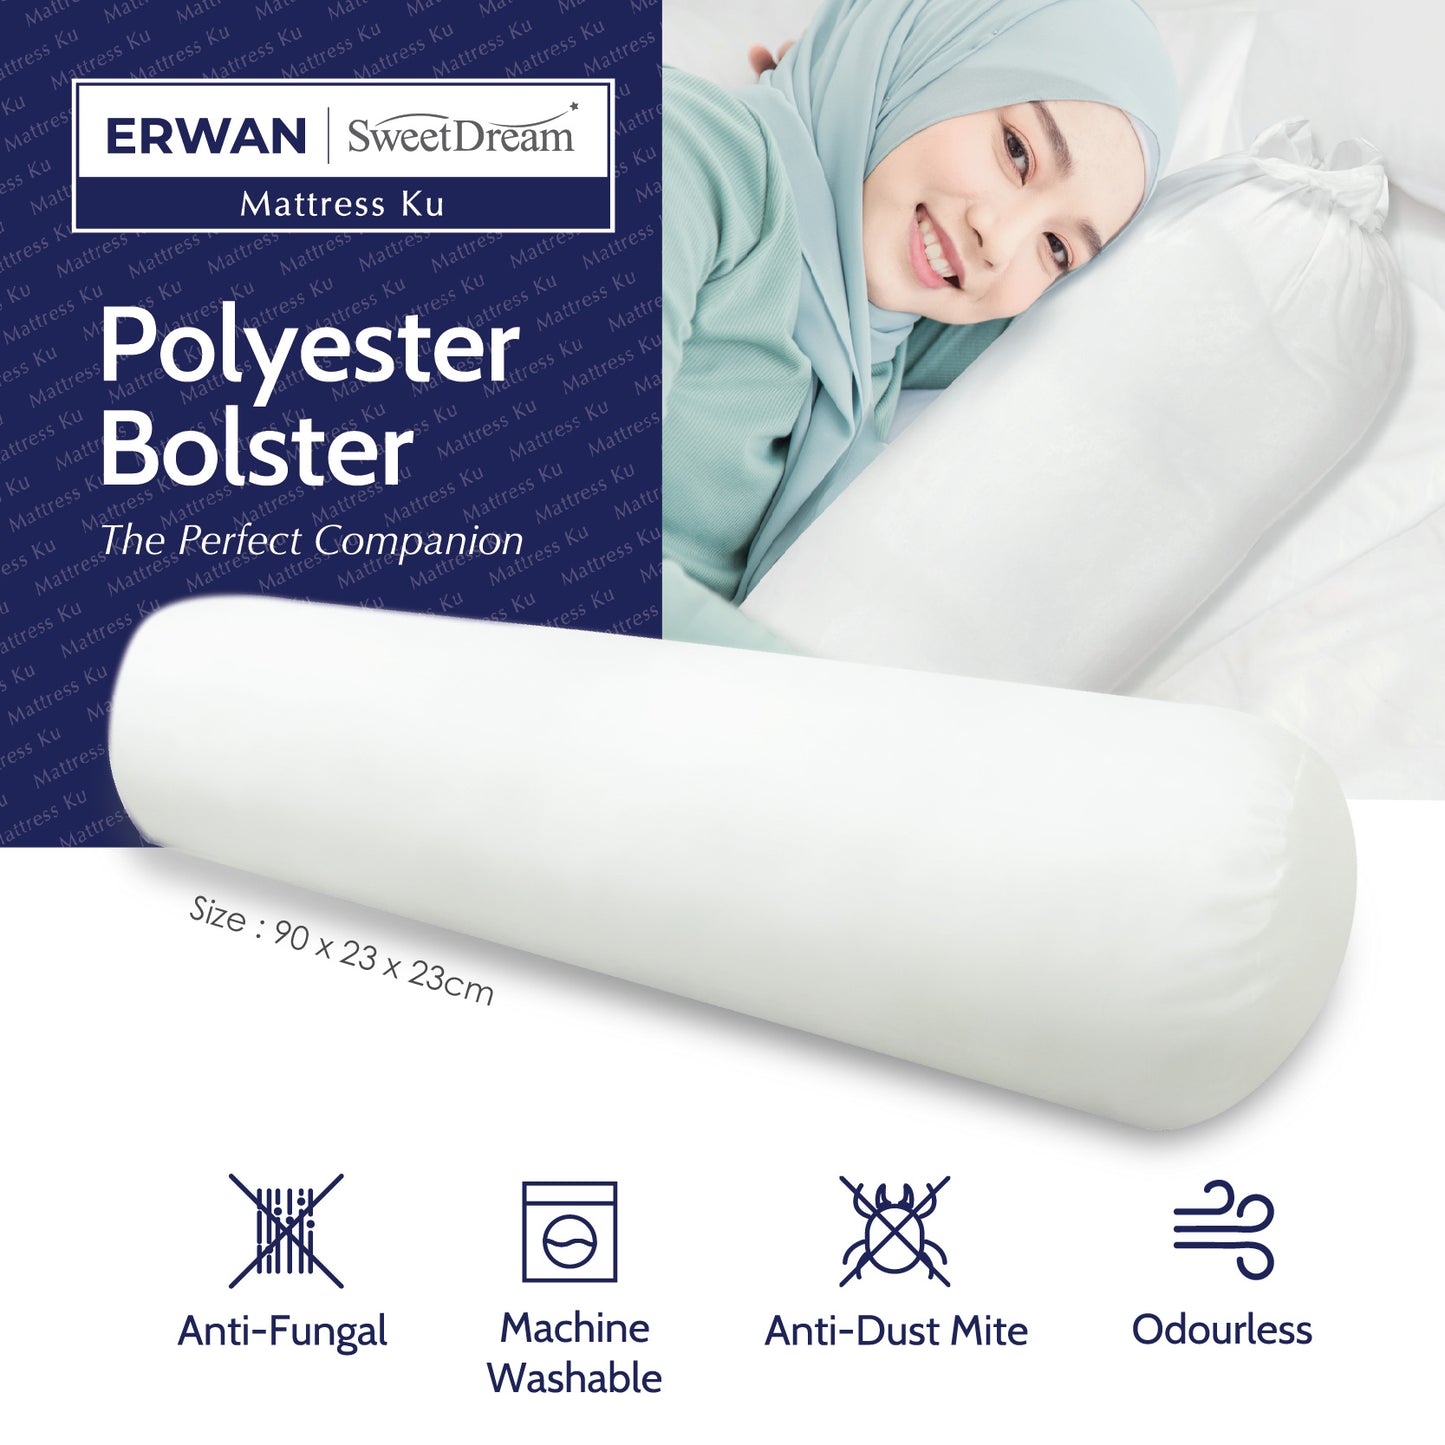 Polyester Bolster